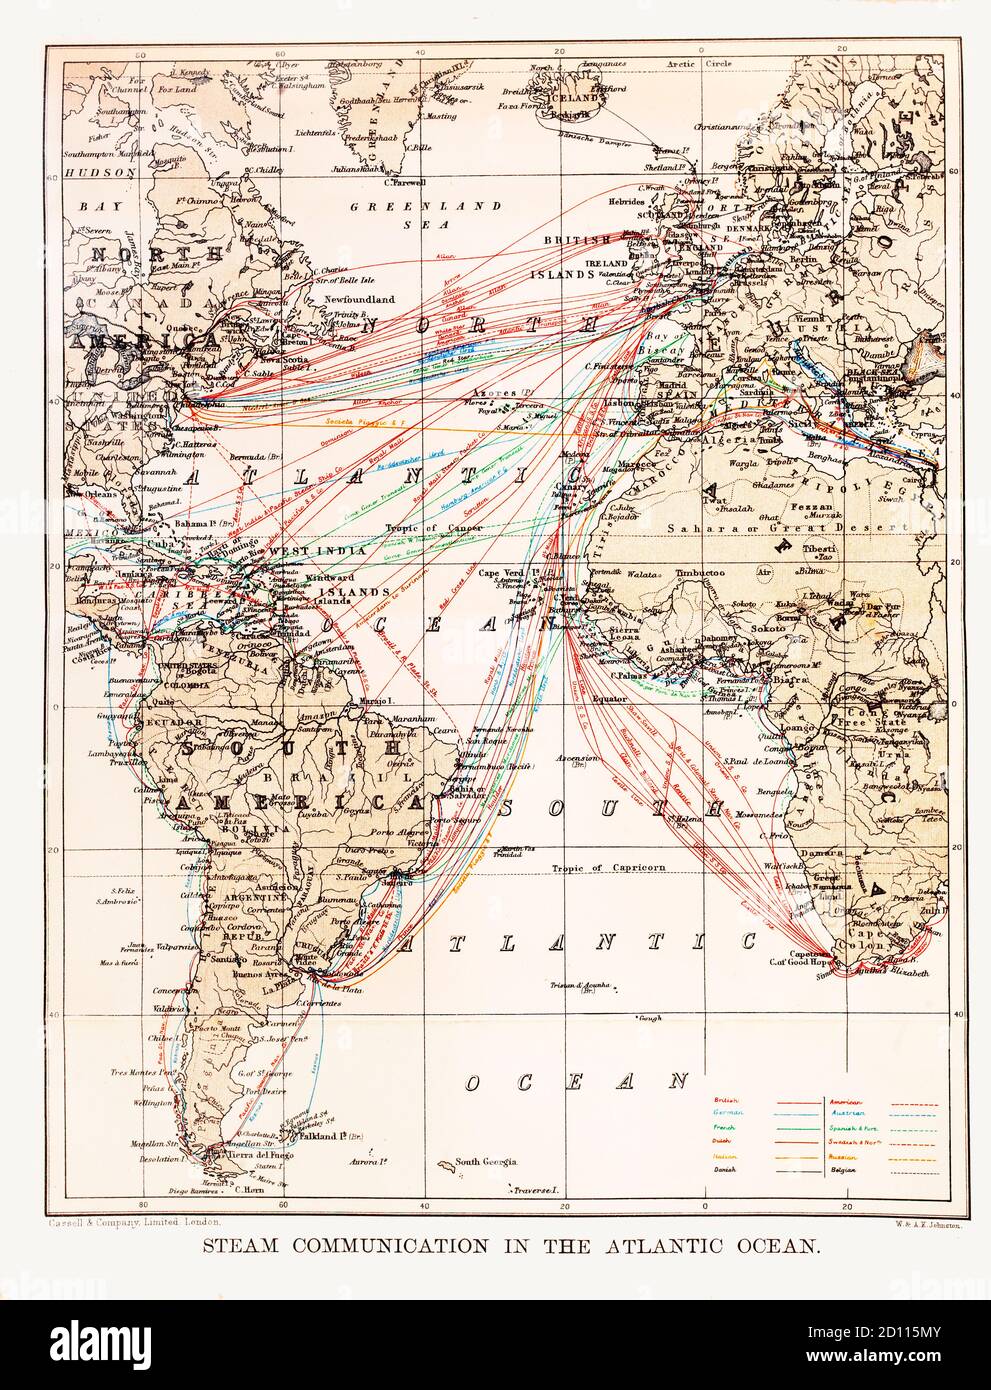 Une carte de la côte atlantique de la fin du XIXe siècle, illustrant les itinéraires de navigation entre les îles britanniques et le reste du monde. Notez que les noms de certains emplacements ne sont plus utilisés. Banque D'Images